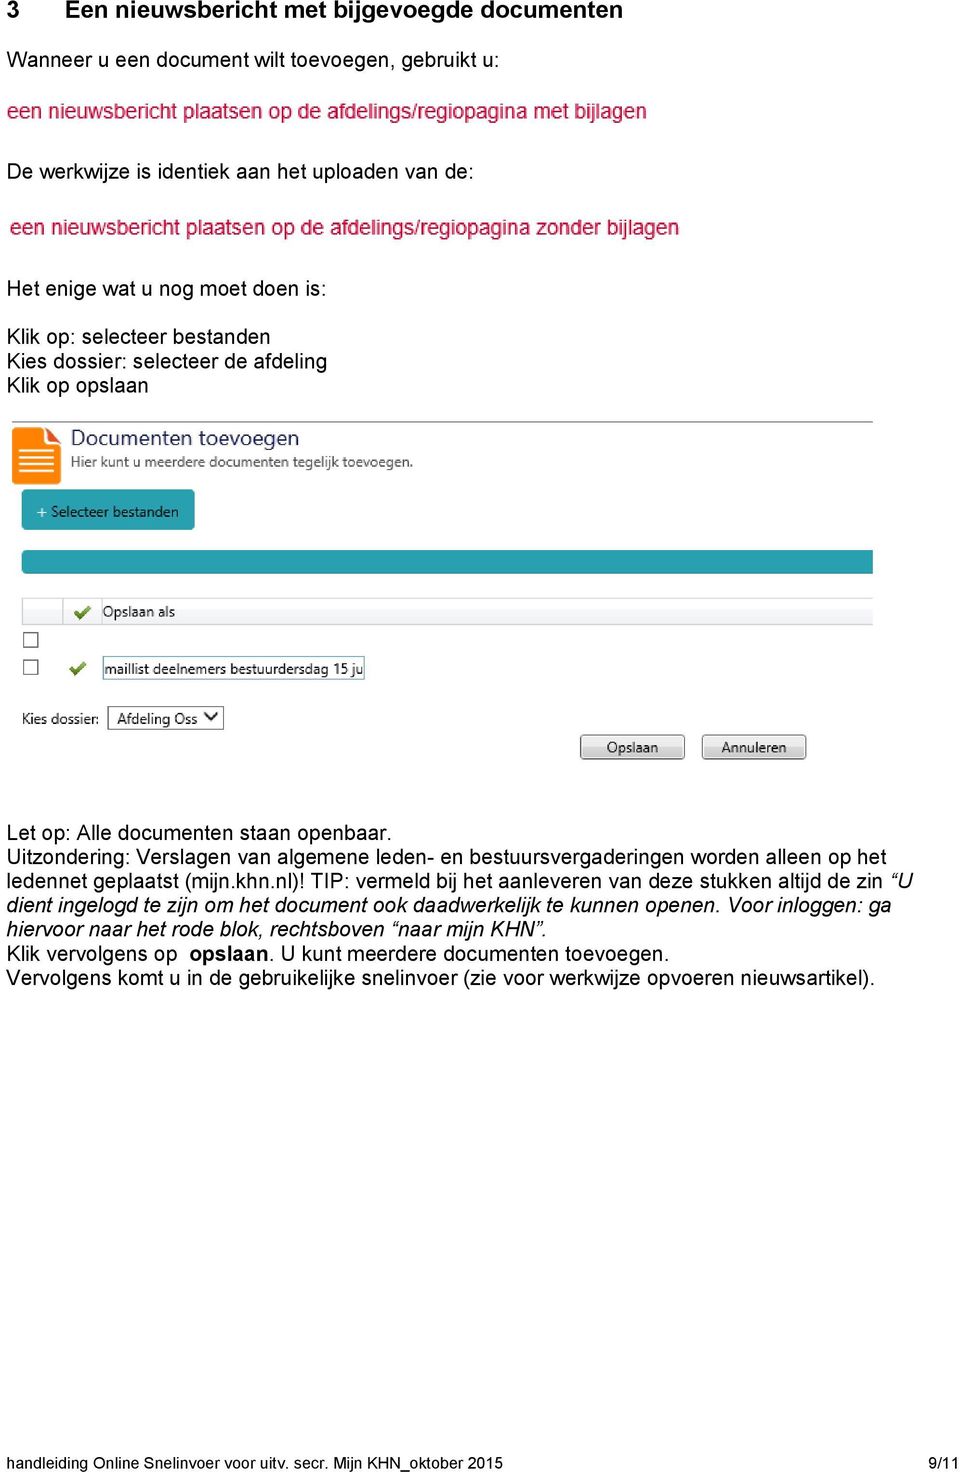 Uitzondering: Verslagen van algemene leden- en bestuursvergaderingen worden alleen op het ledennet geplaatst (mijn.khn.nl)!